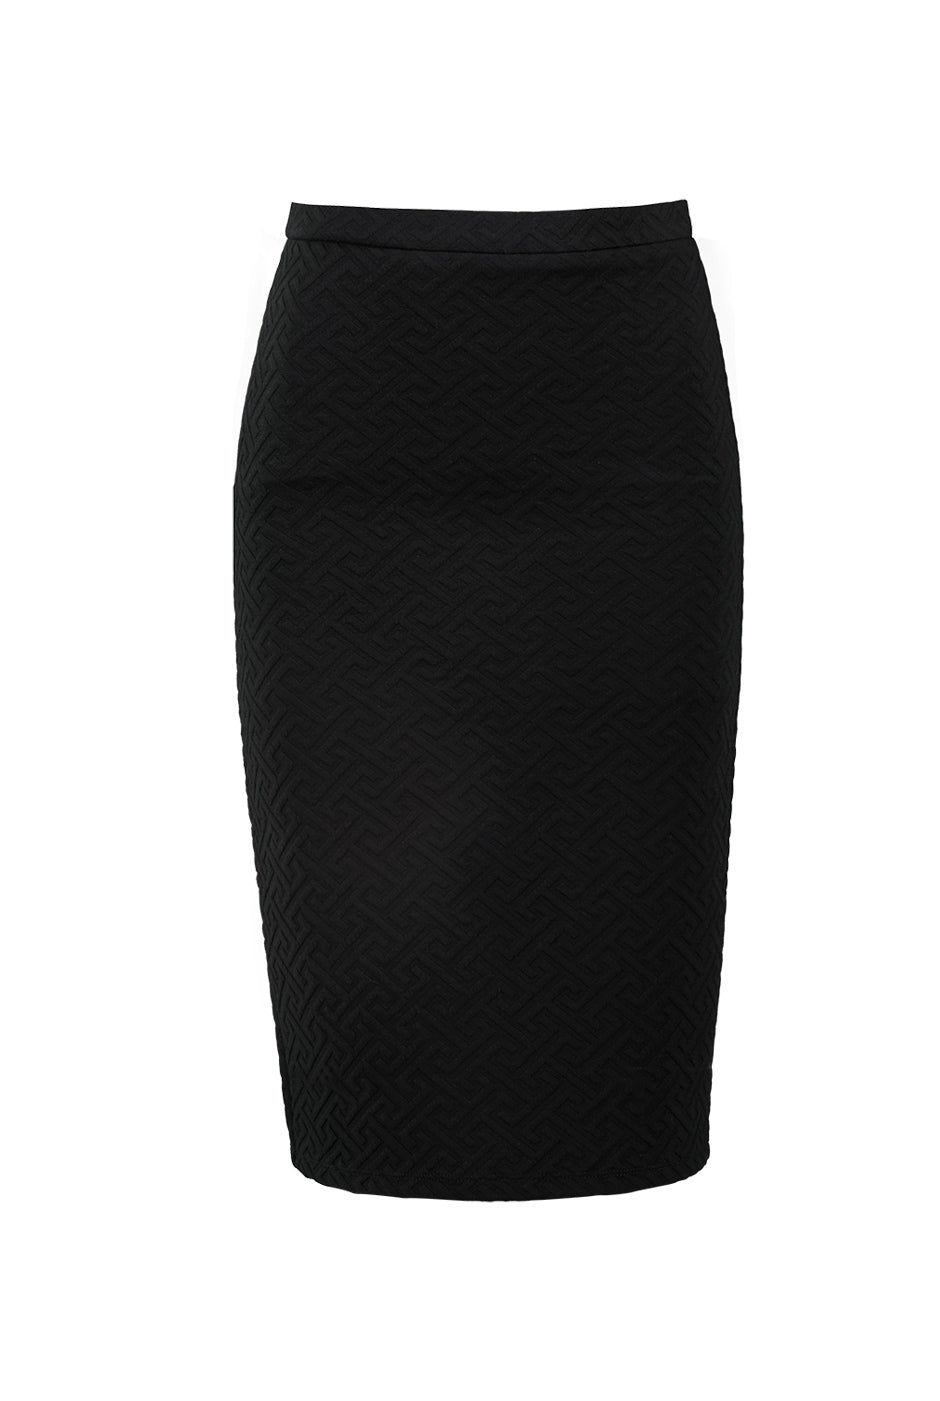 Falda ajustado color negra con abertura trasera